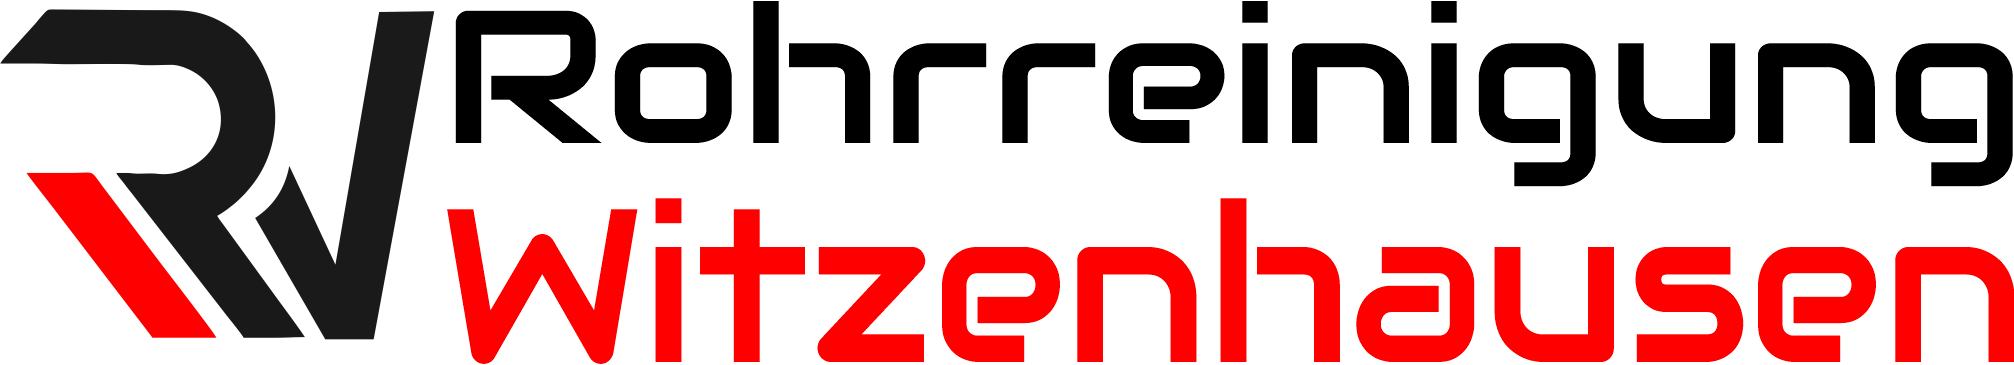 Rohrreinigung Witzenhausen Logo